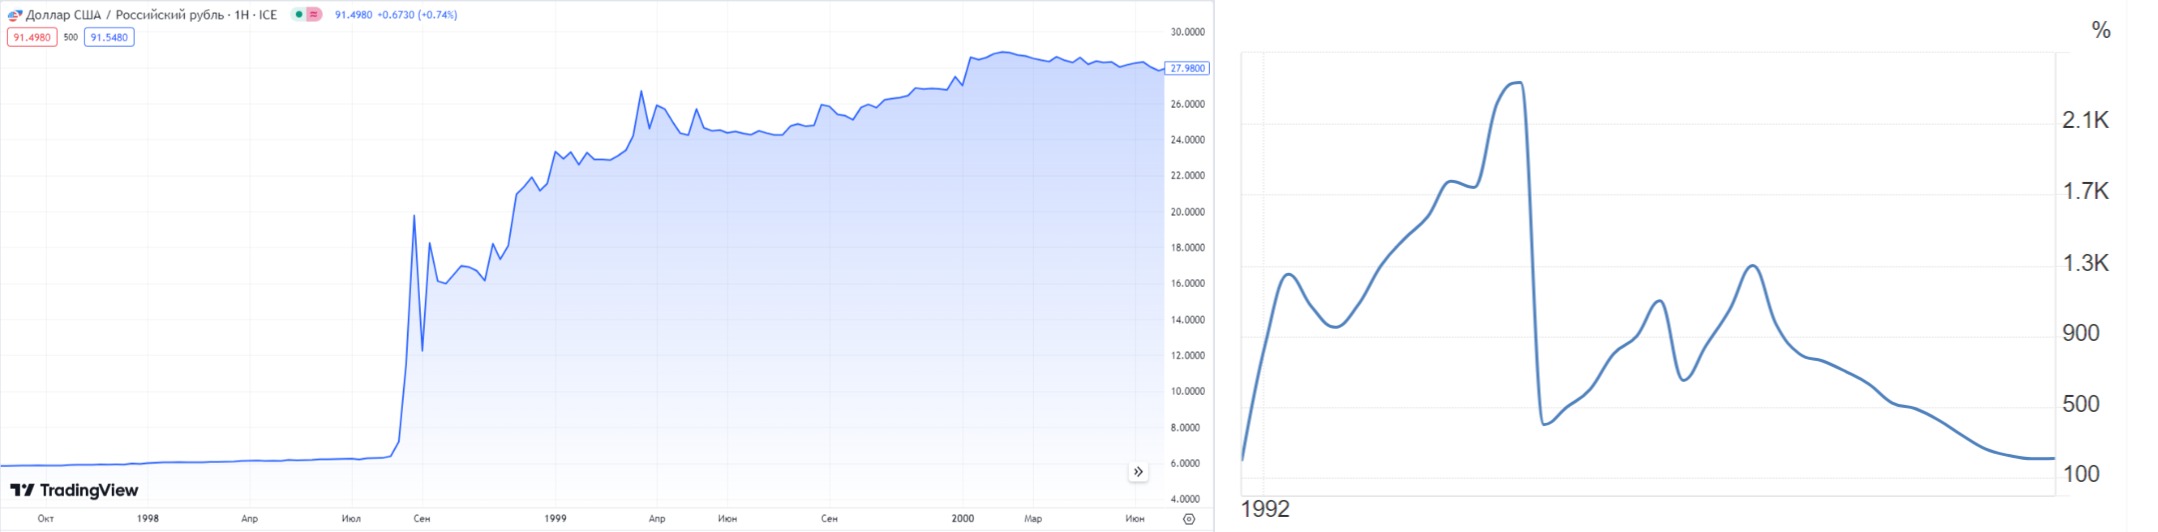 Скачок инфляции и обесценивания рубля в 90-х годах